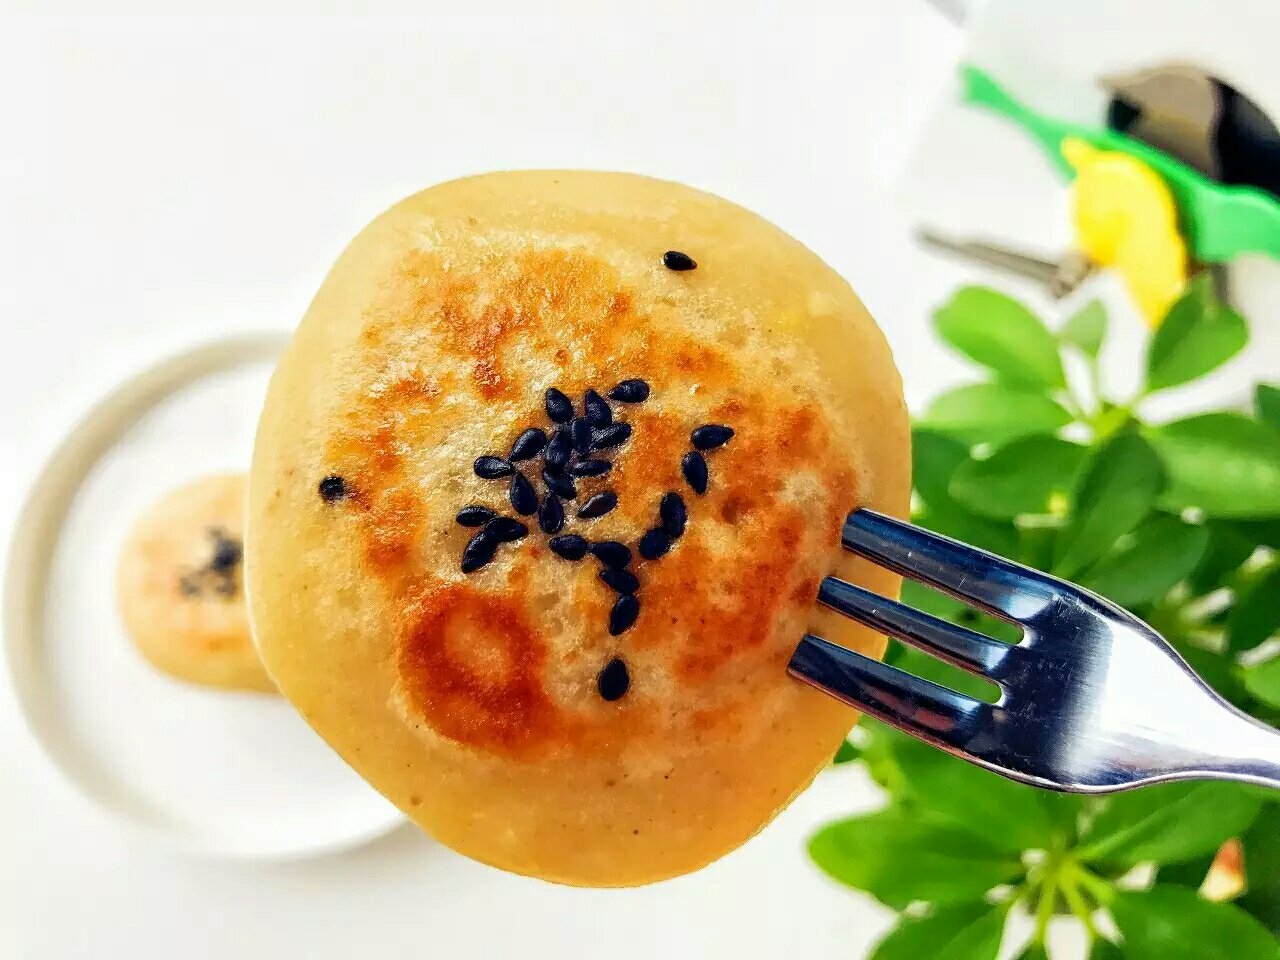 宝宝辅食:苹果栗子饼—苹果清甜,加上栗子的粉糯和香味,怎么也吃不够哦12M